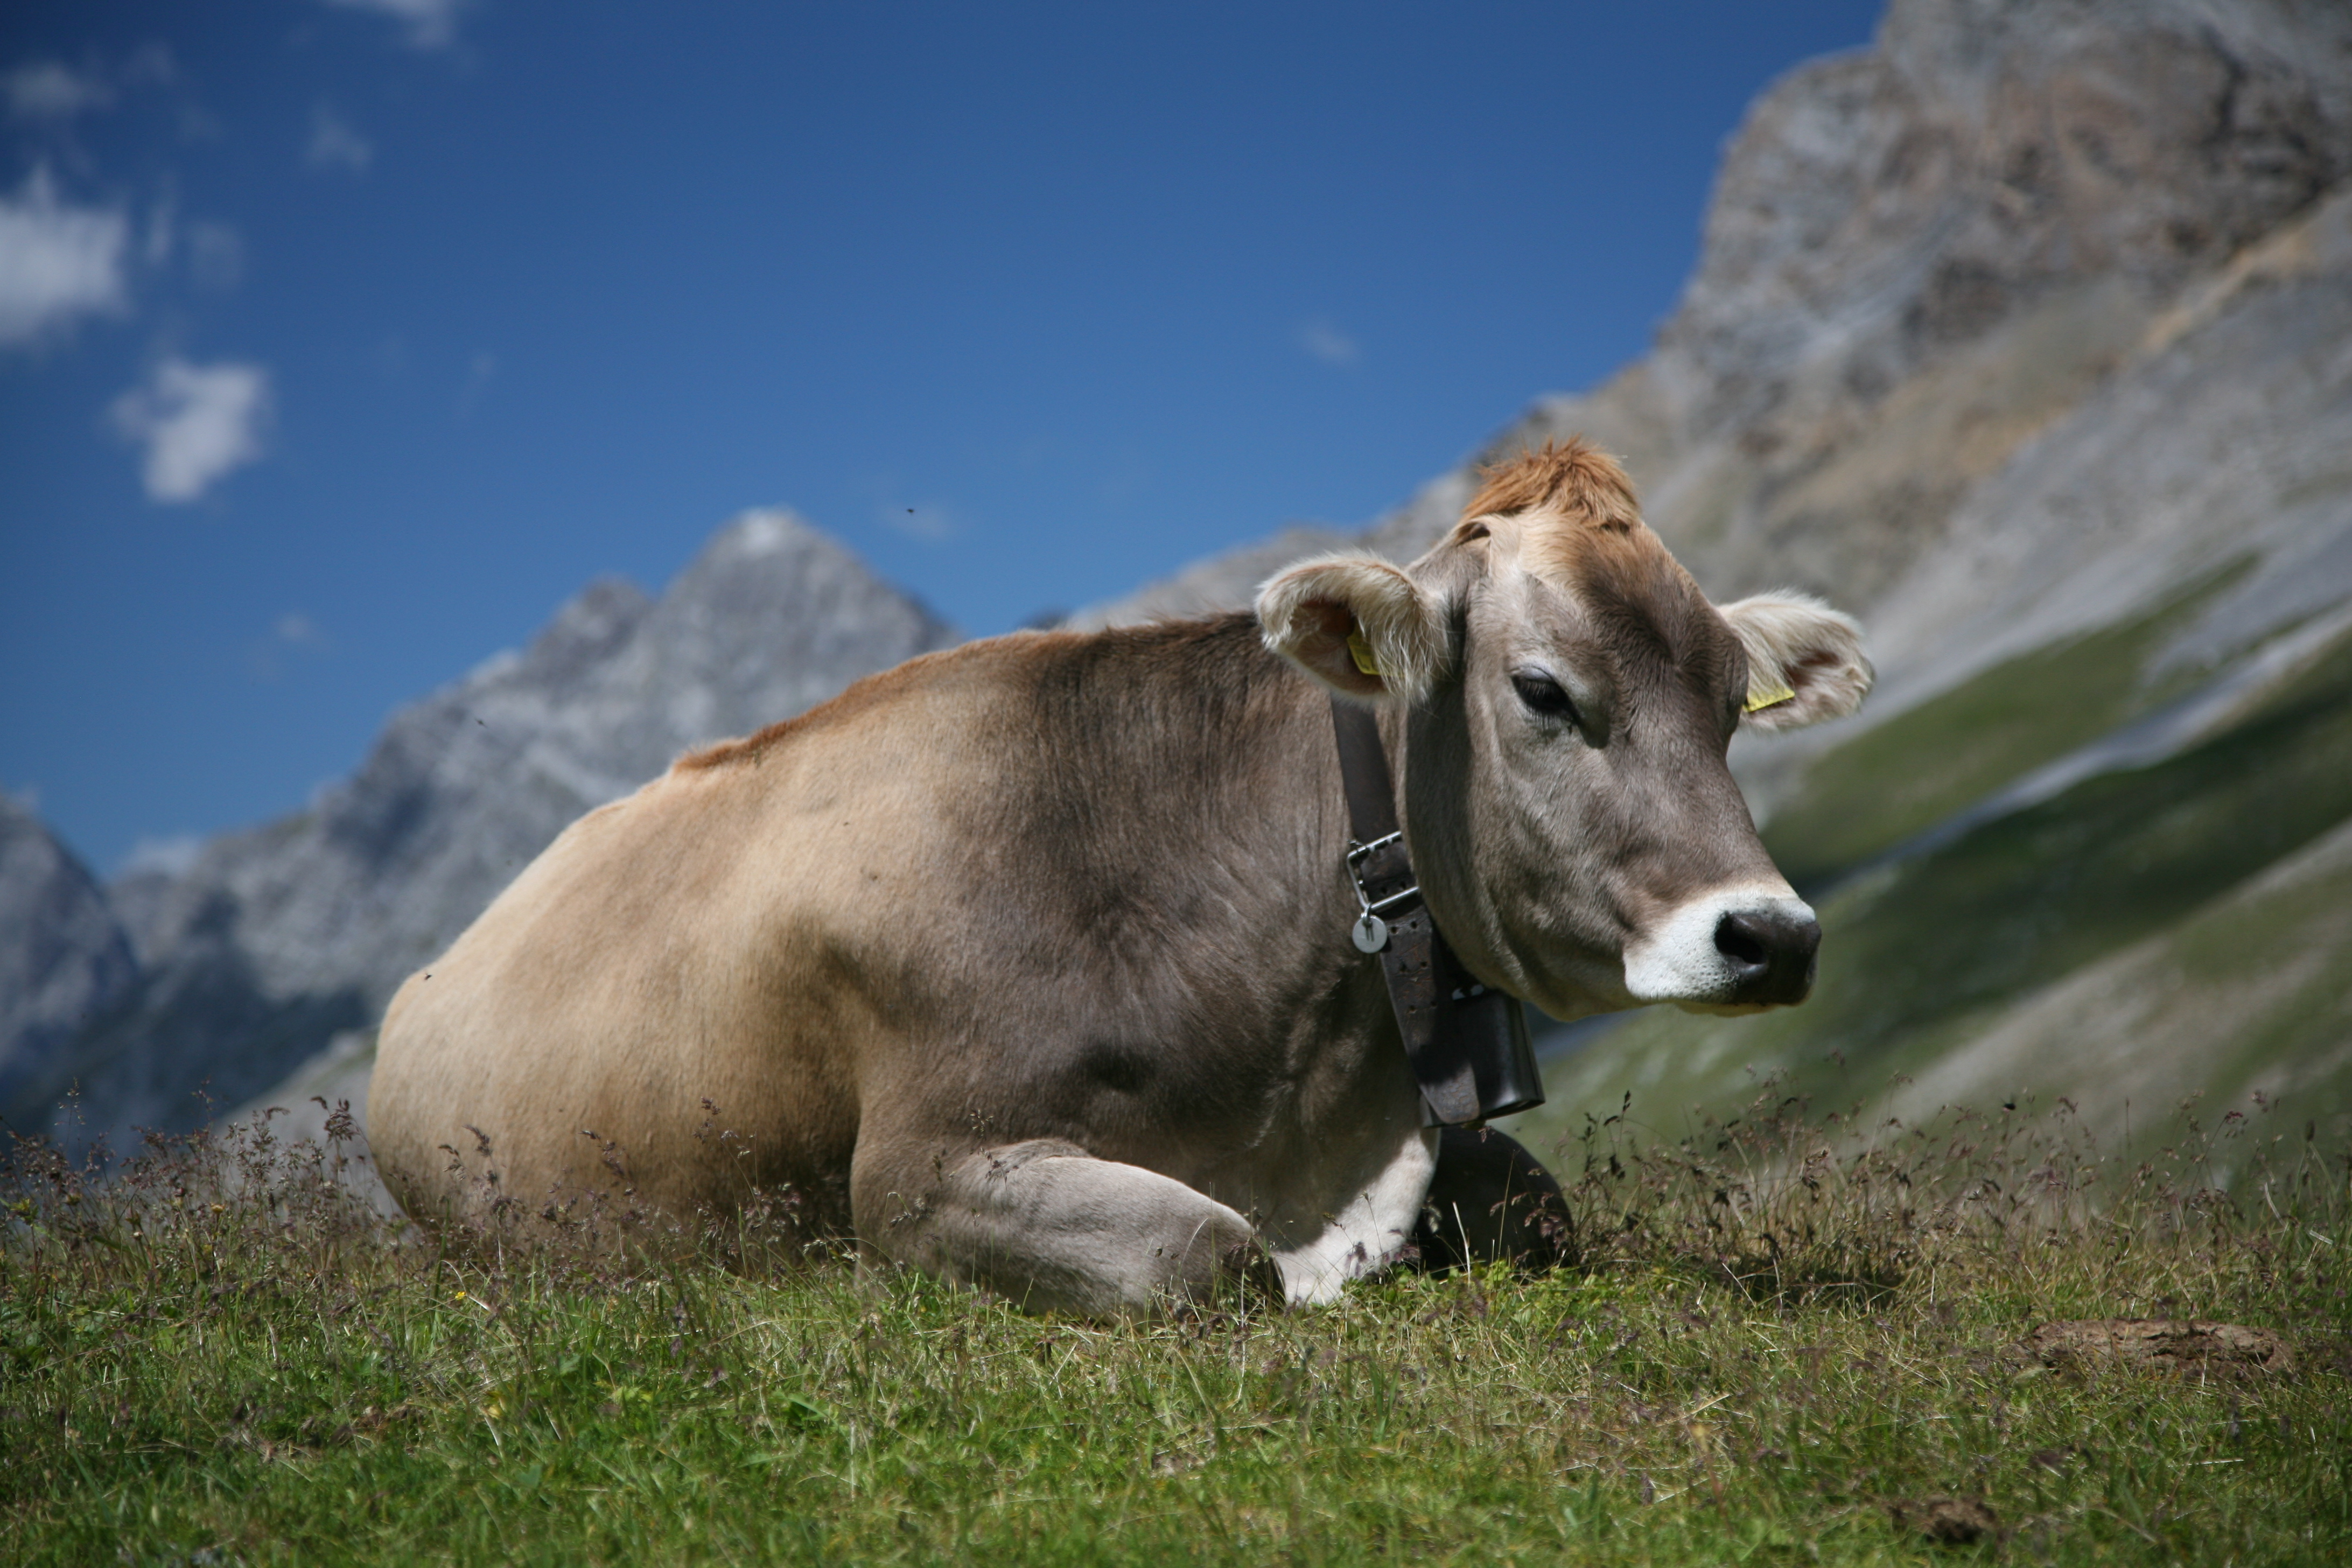 Cow (Swiss Braunvieh breed) by Daniel Schwen